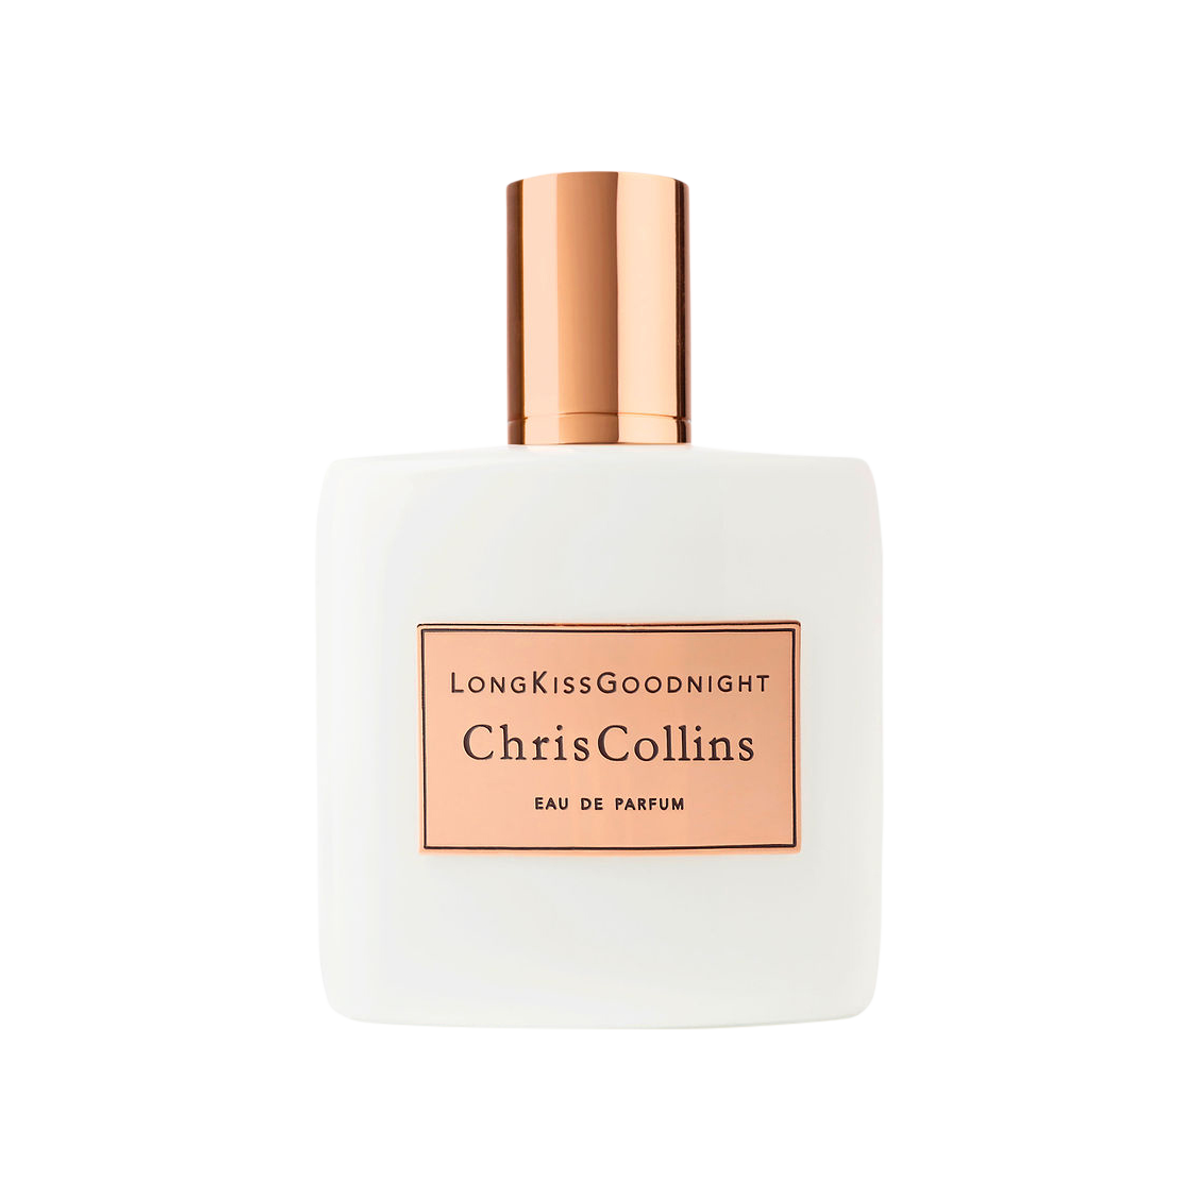 Chris Collins - Long Kiss Goodnight Eau de Parfum